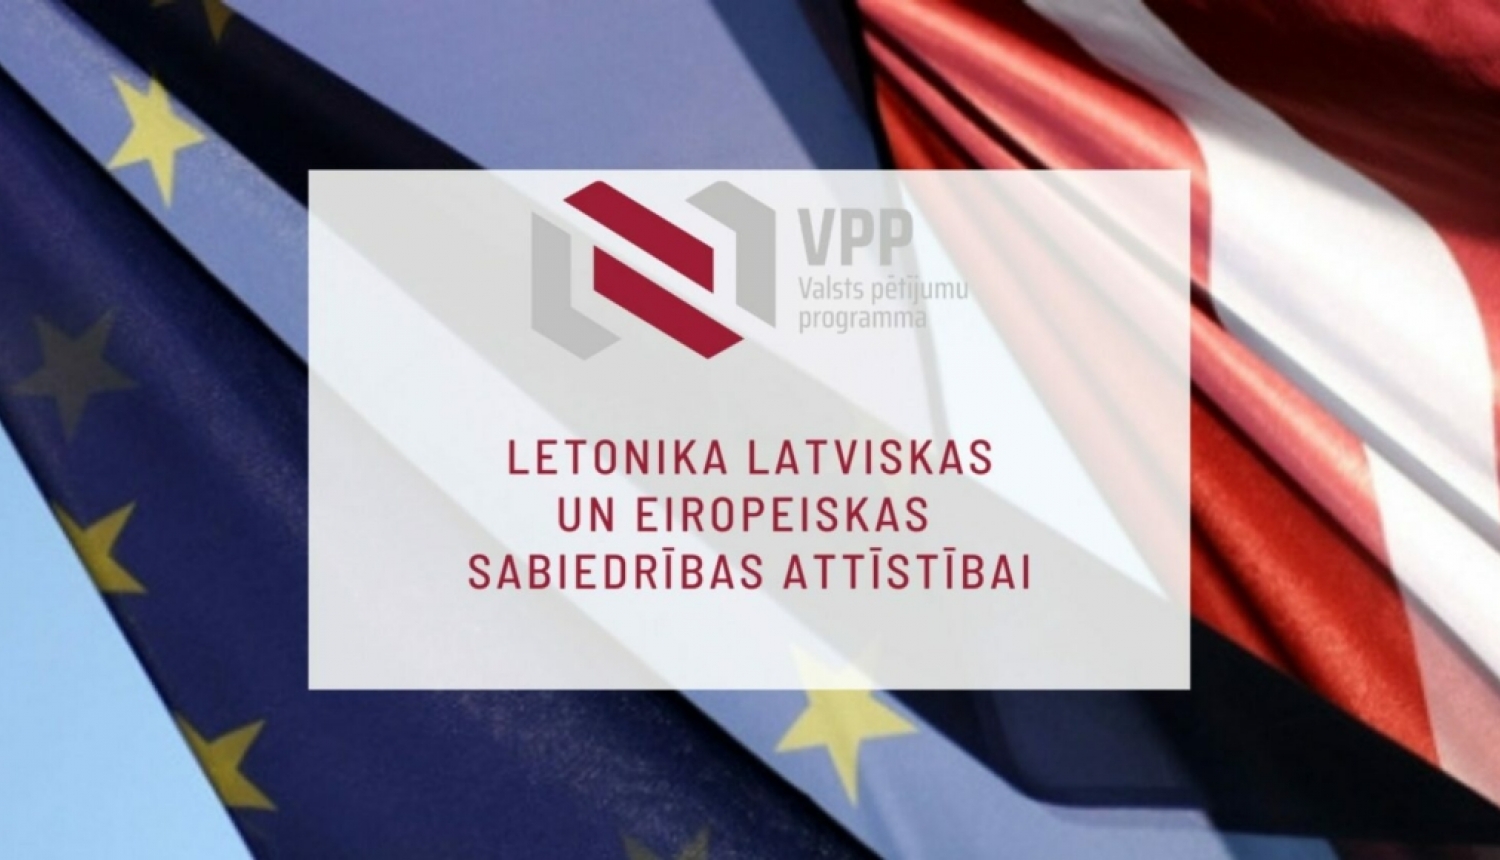 Tiks pagarināts projektu pieteikumu iesniegšanas termiņš VPP “Letonika latviskas un eiropeiskas sabiedrības attīstība” līdz š.g. 6. oktobrim